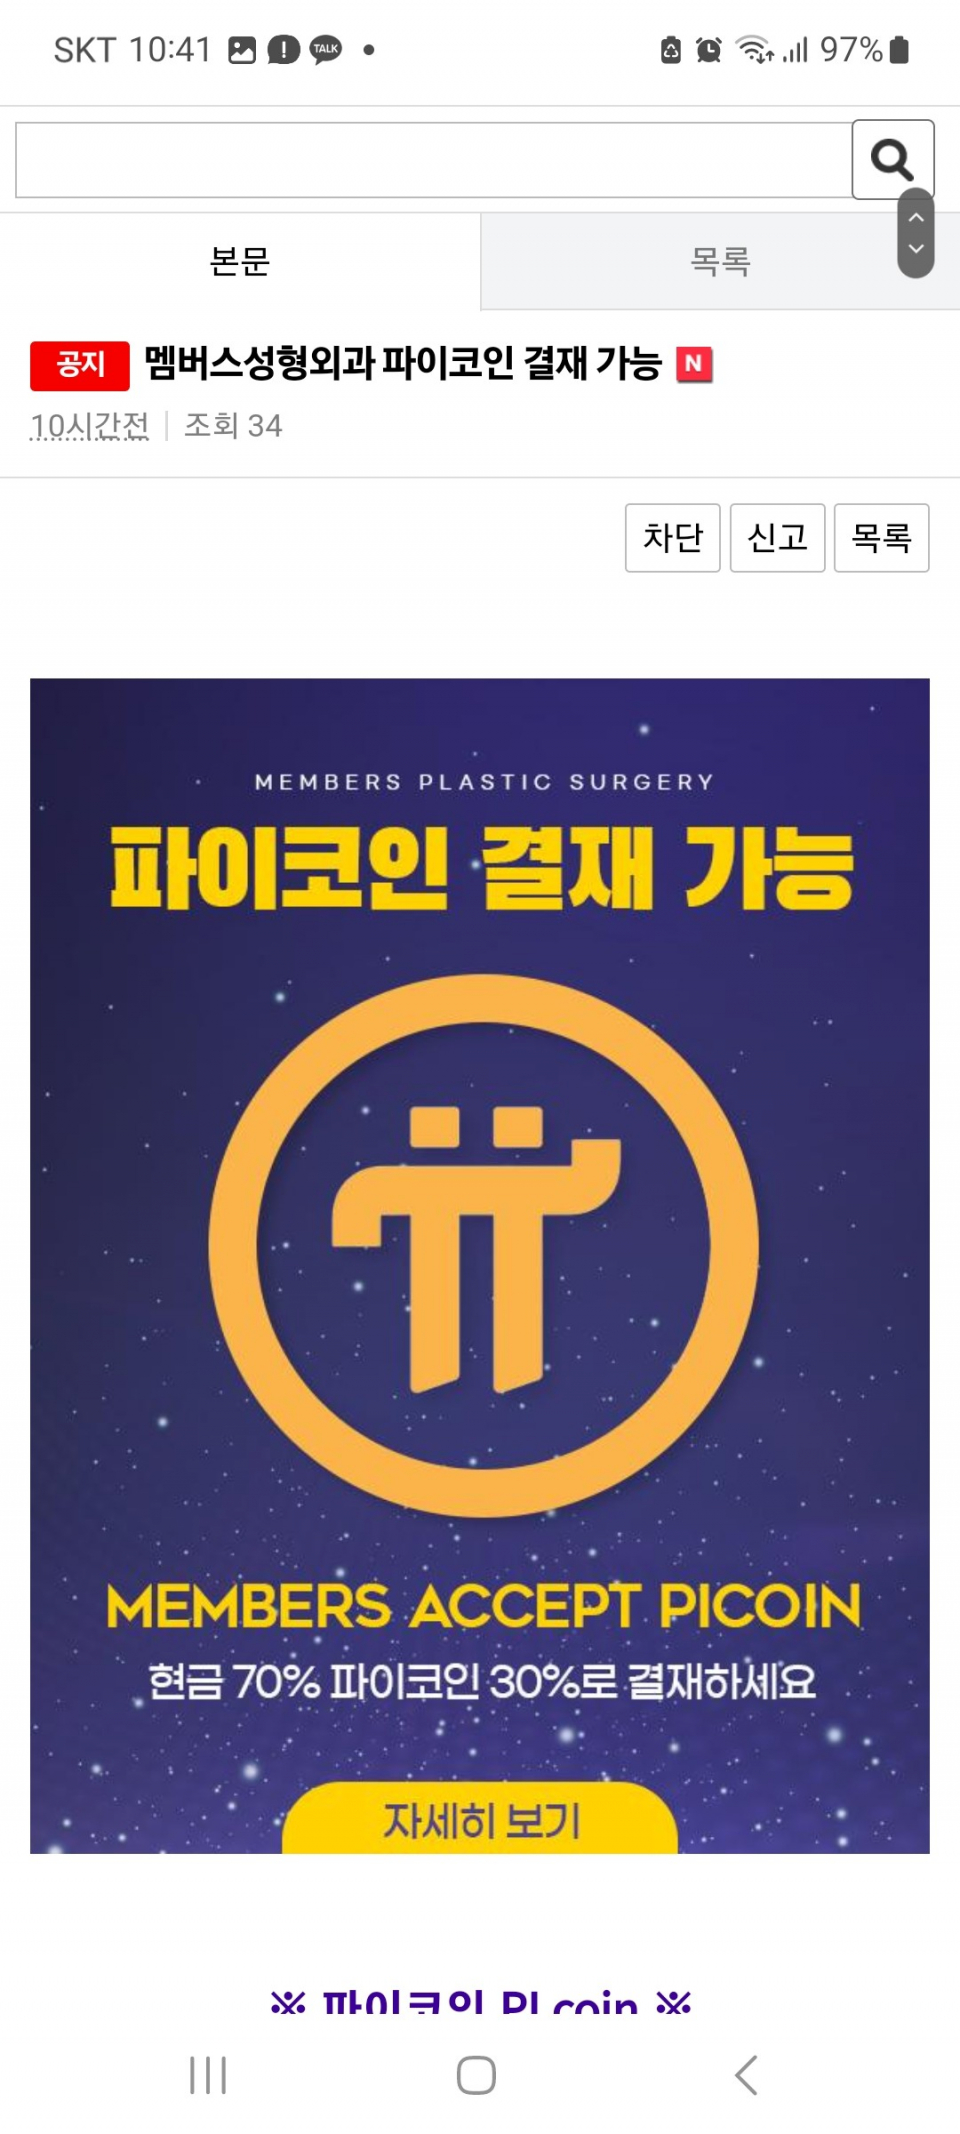 서울 성형외과 파이코인(휴대폰 채굴) 결제도입...